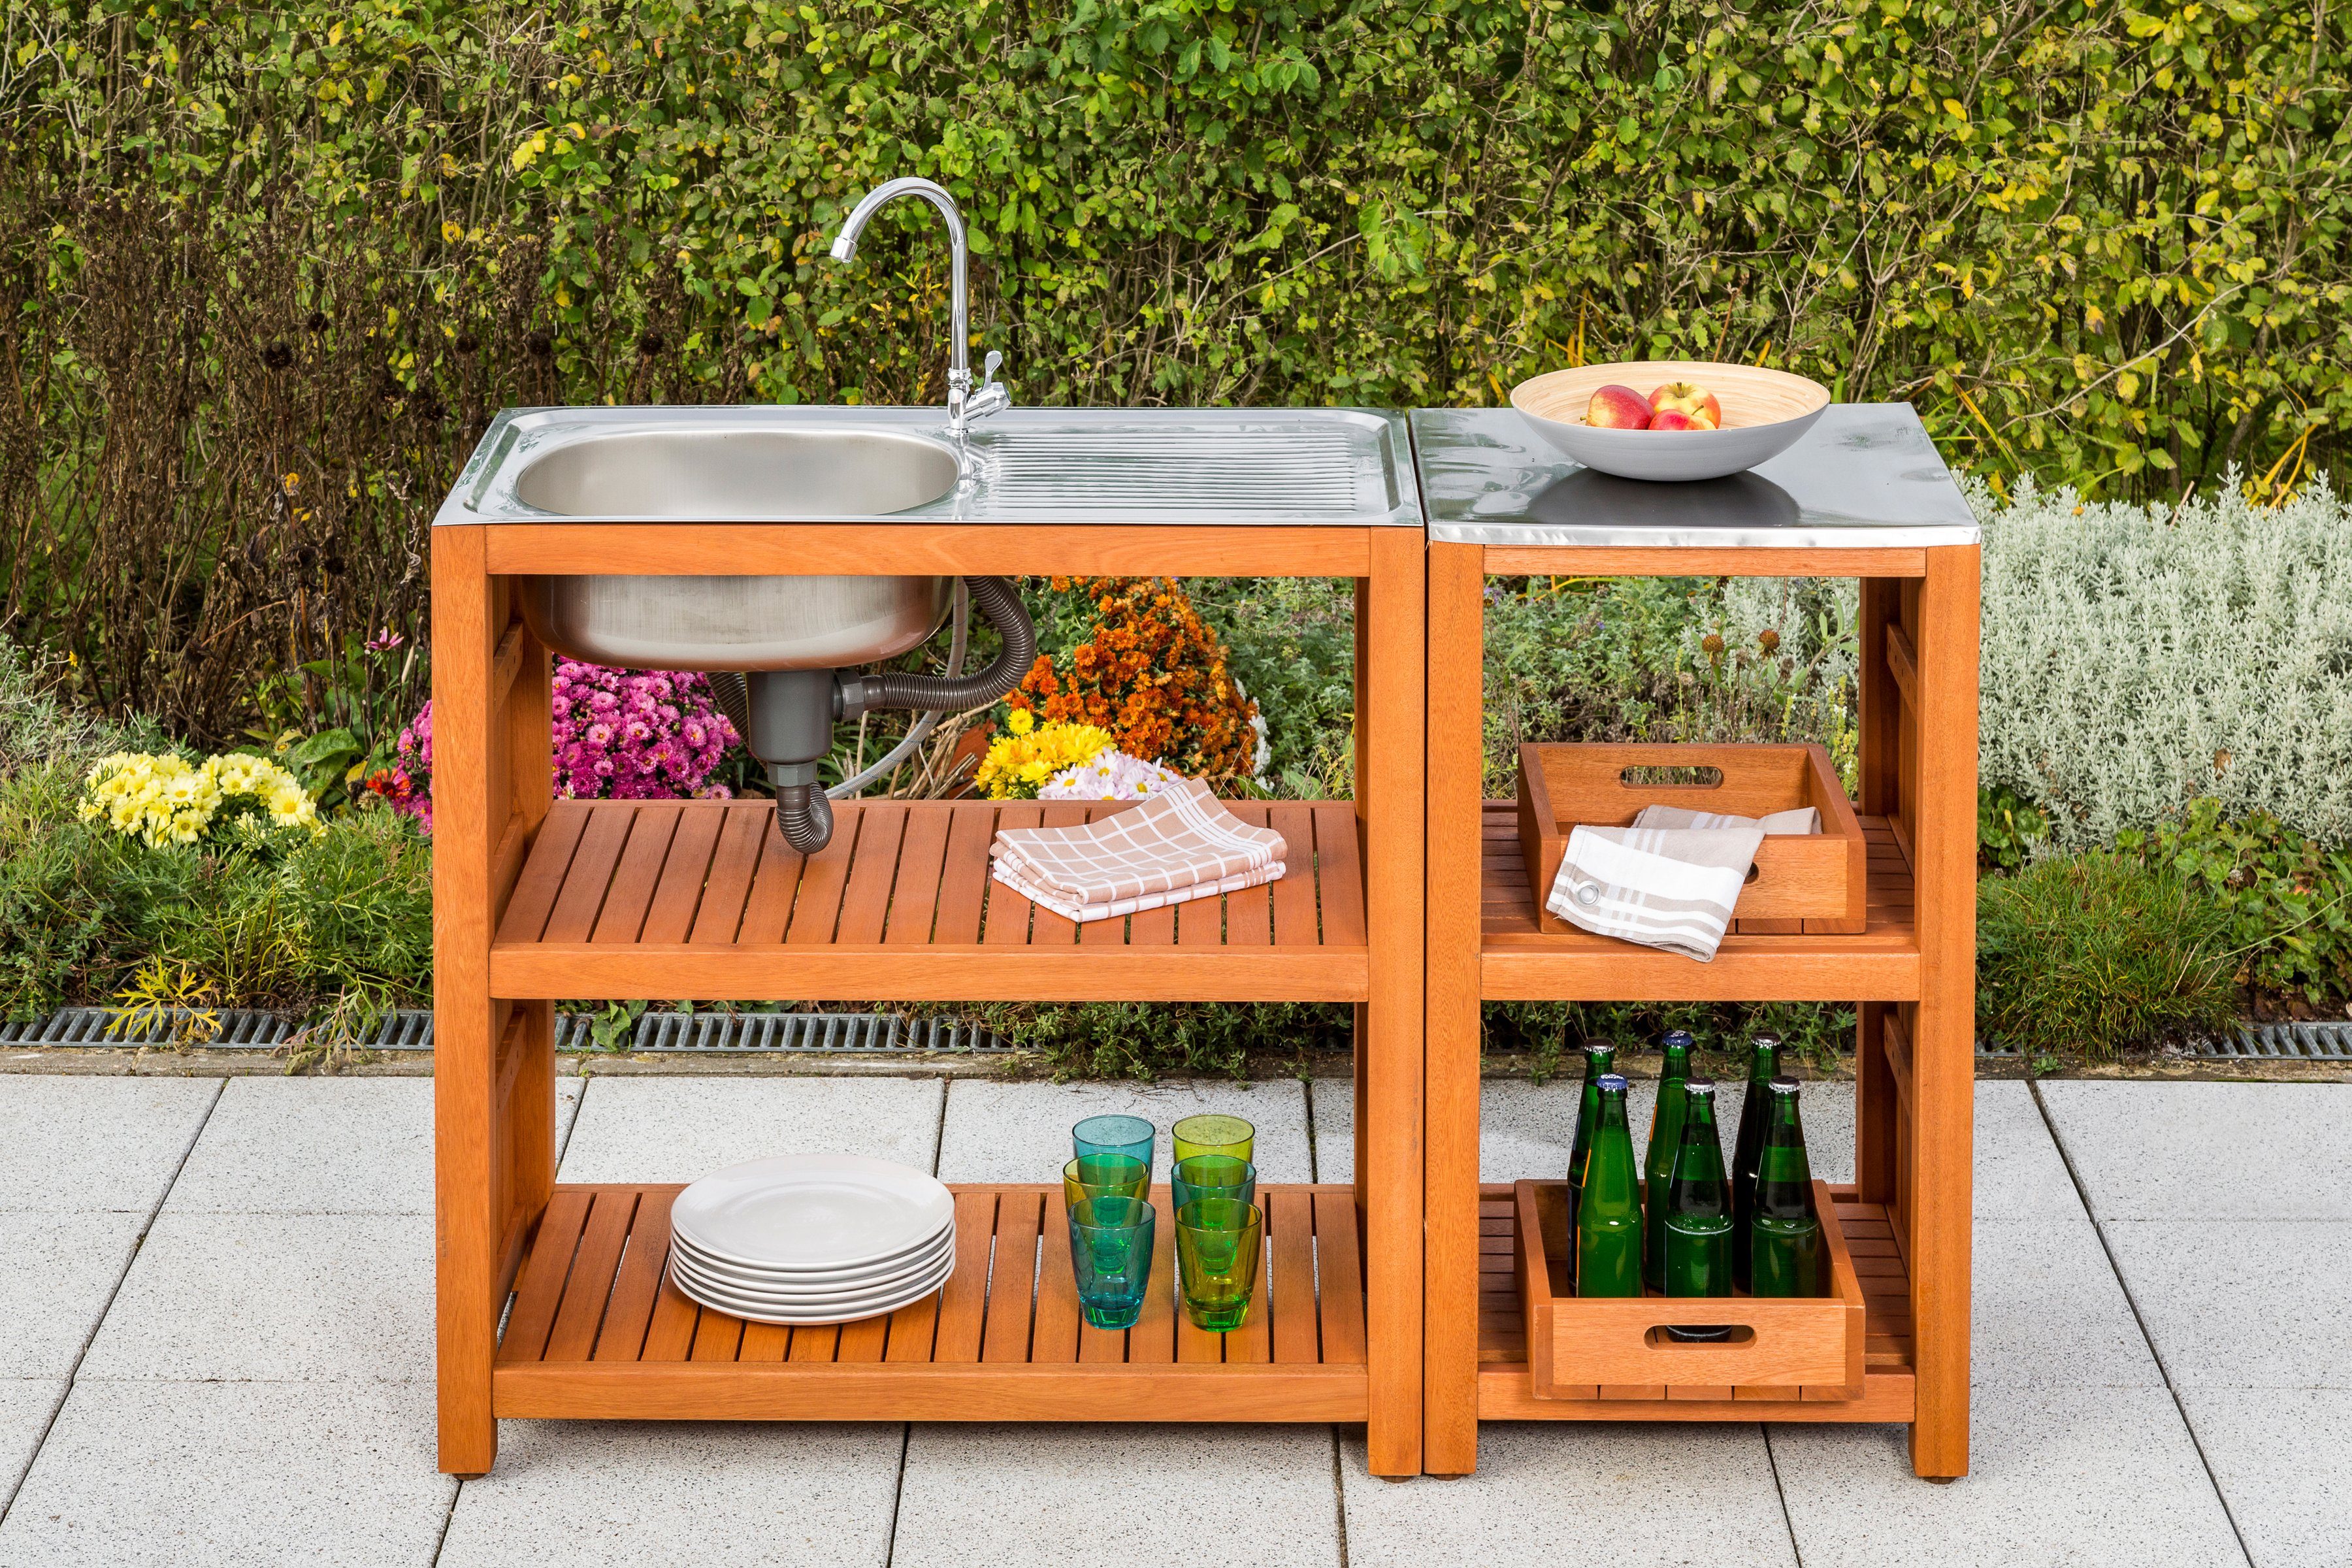 MERXX Gartentisch, Mit Sideboard sowie Edelstahlplatte und zwei Boxen | Tische